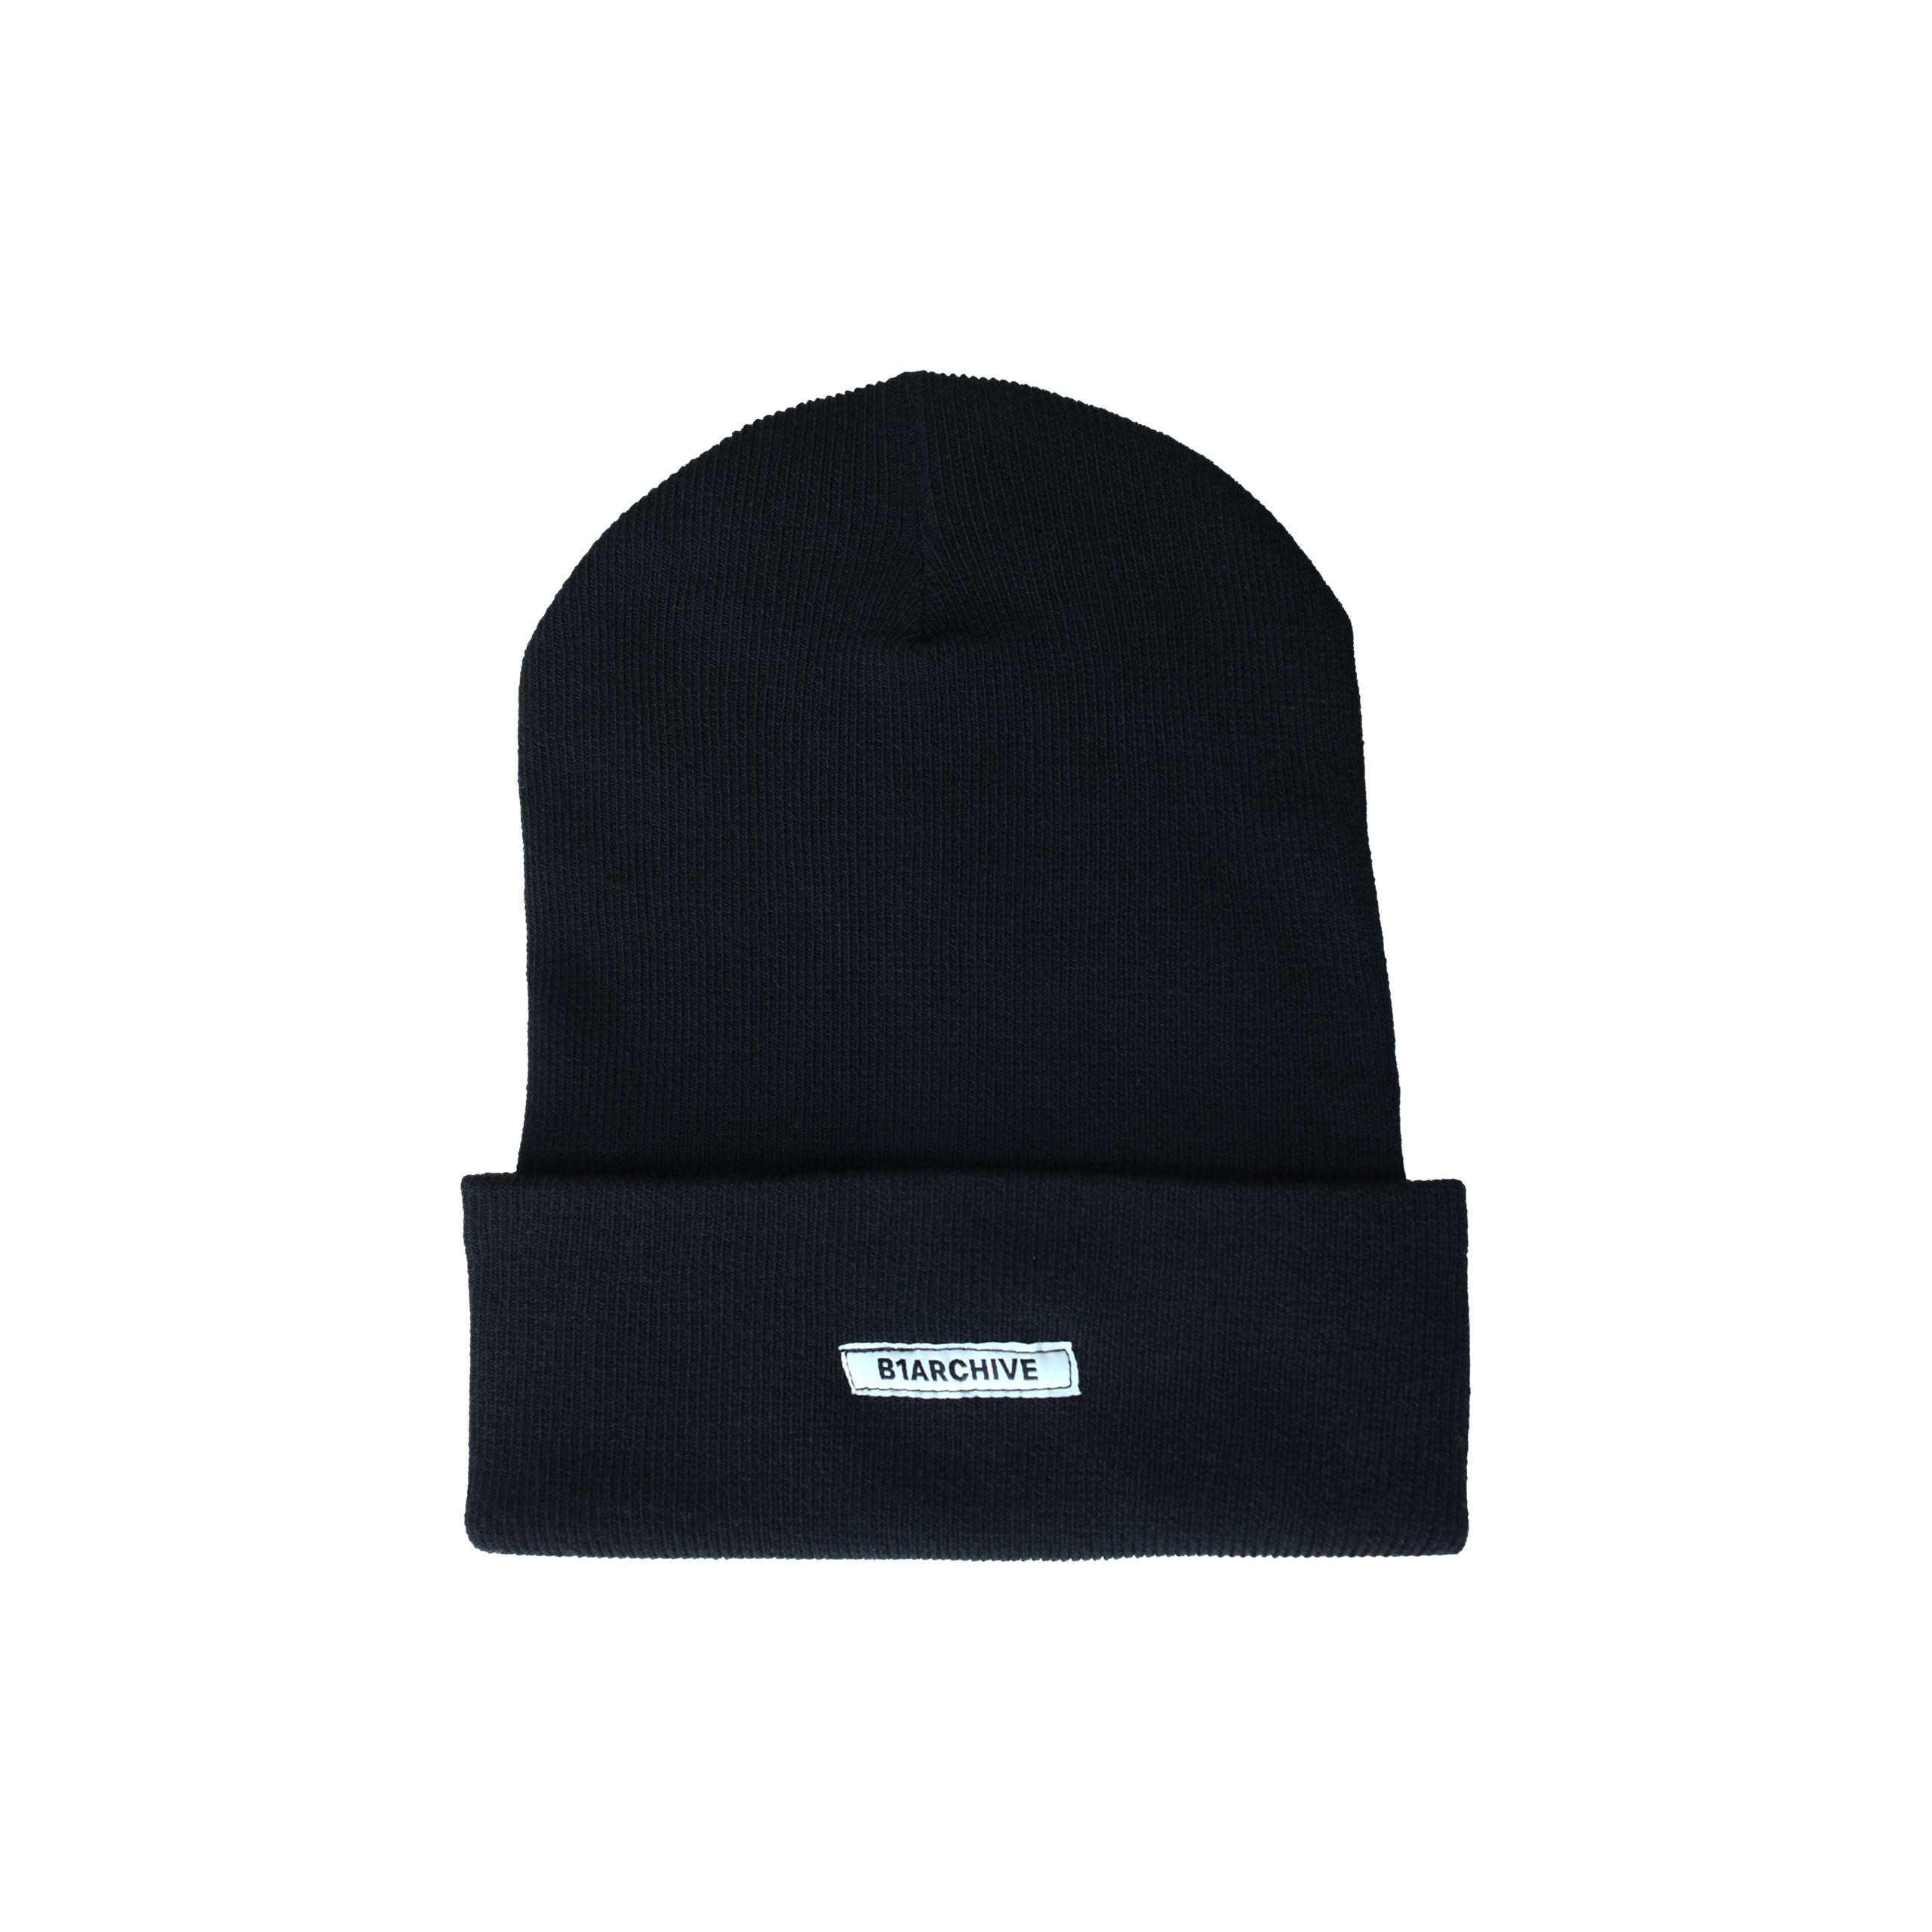 Черная шапка с подворотом B1ARCHIVE A001-1B1A0004-BLK, размер One Size - фото 3